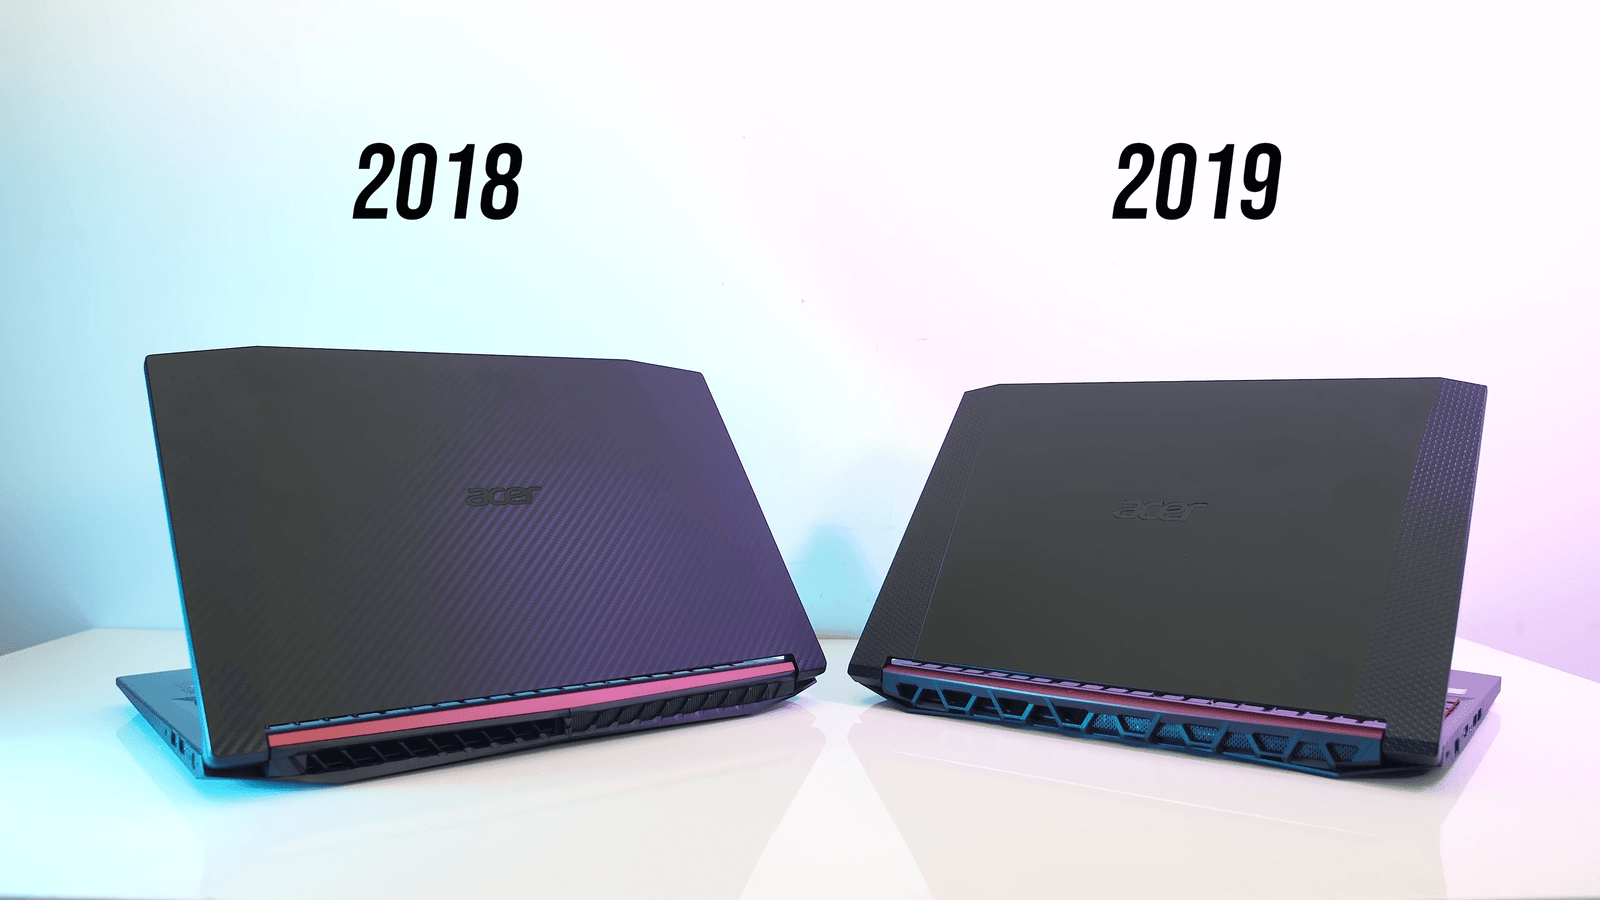 Acer Nitro 5 2019 vs 2018 Rear